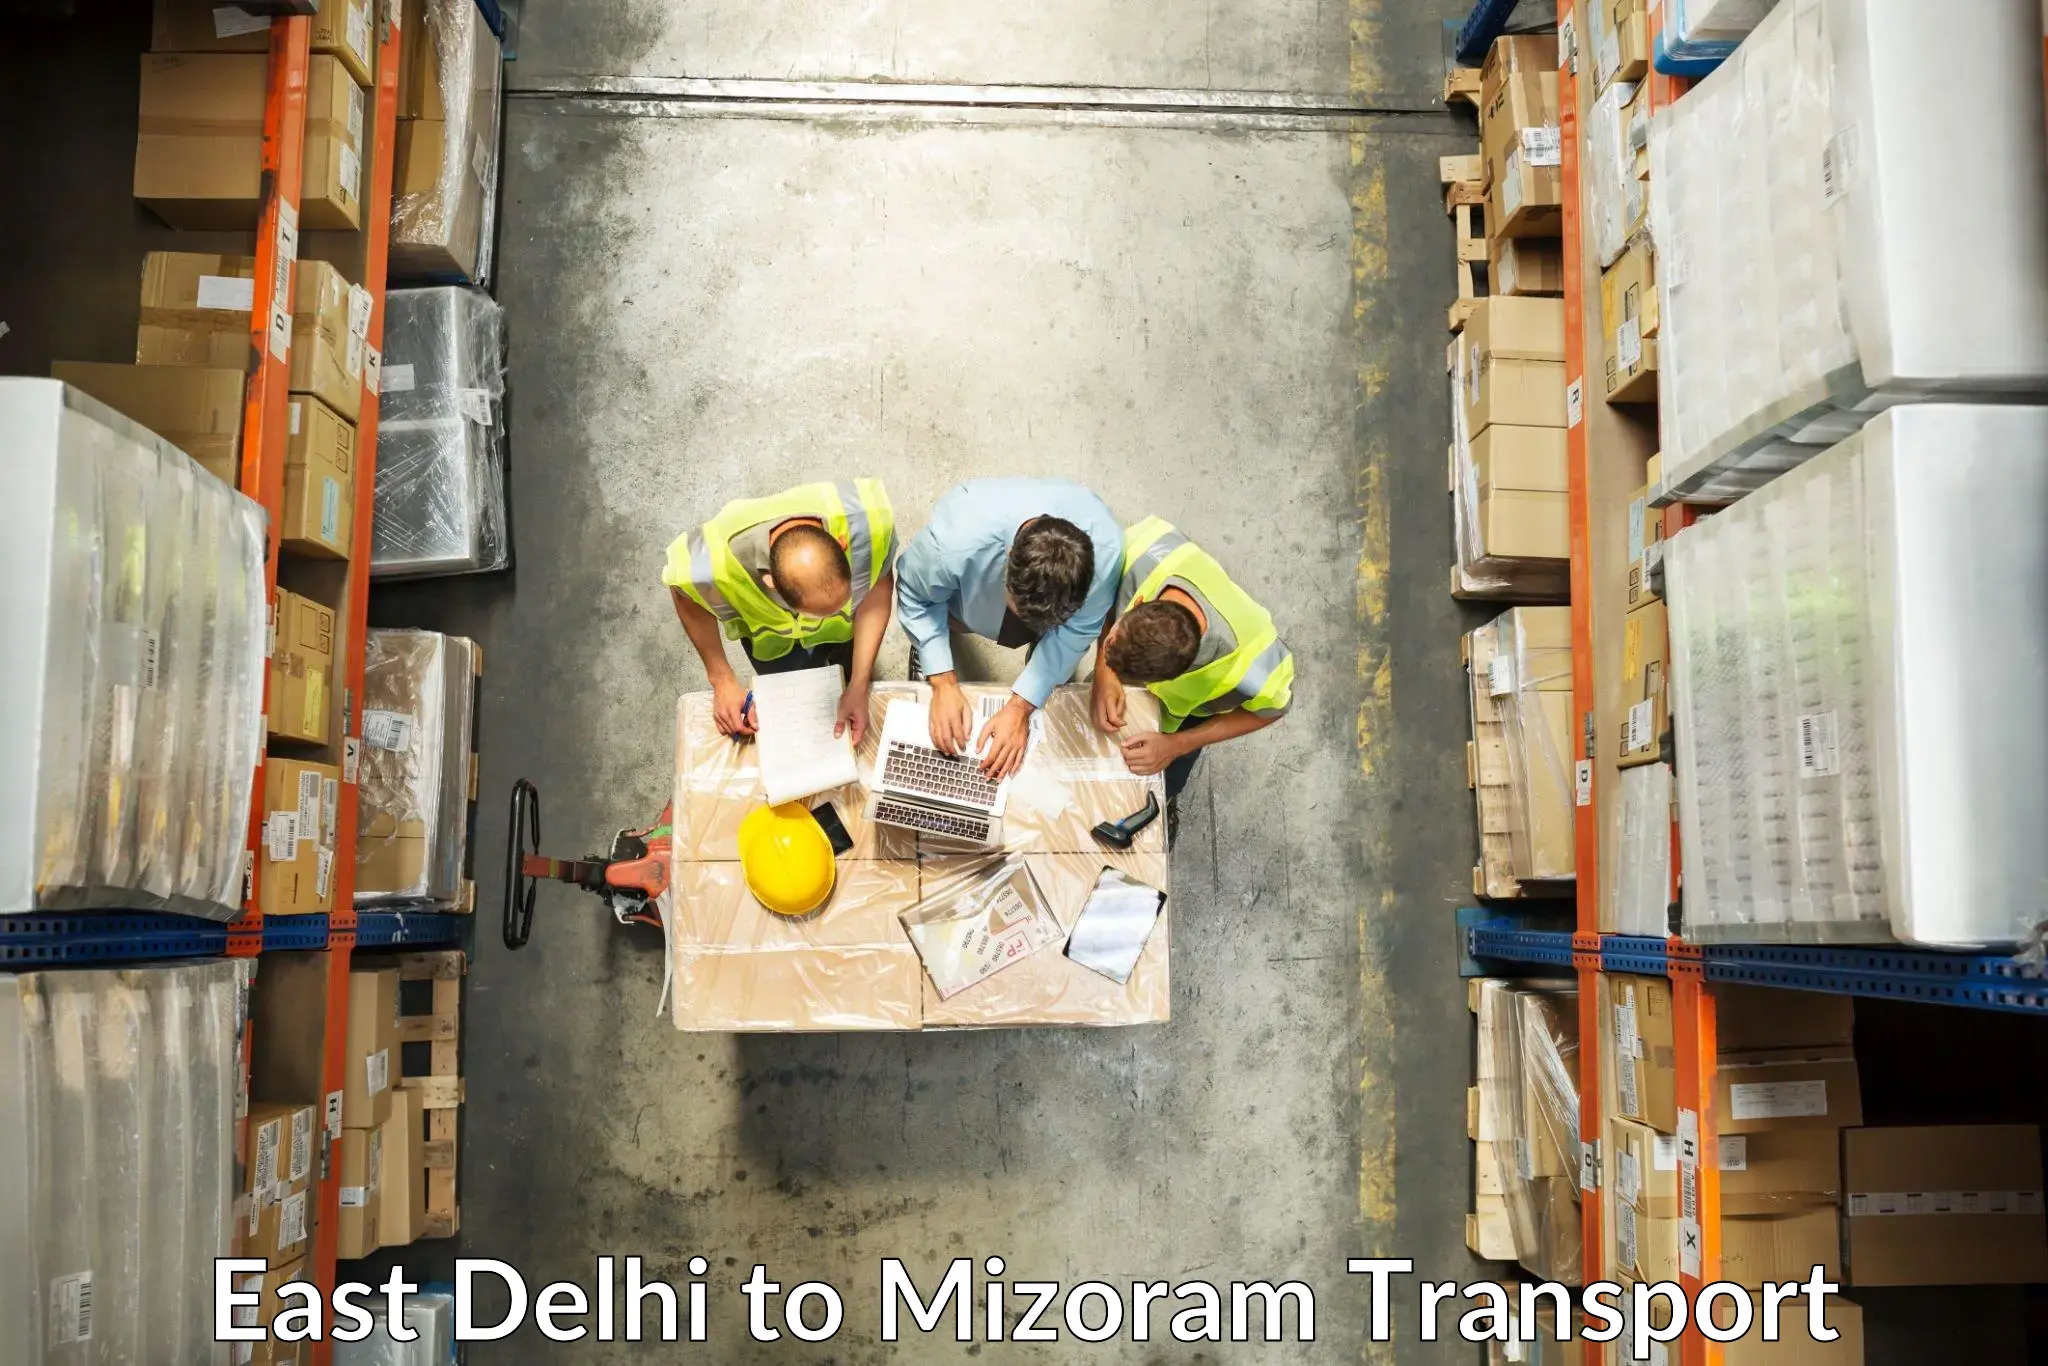 Truck transport companies in India East Delhi to Mizoram